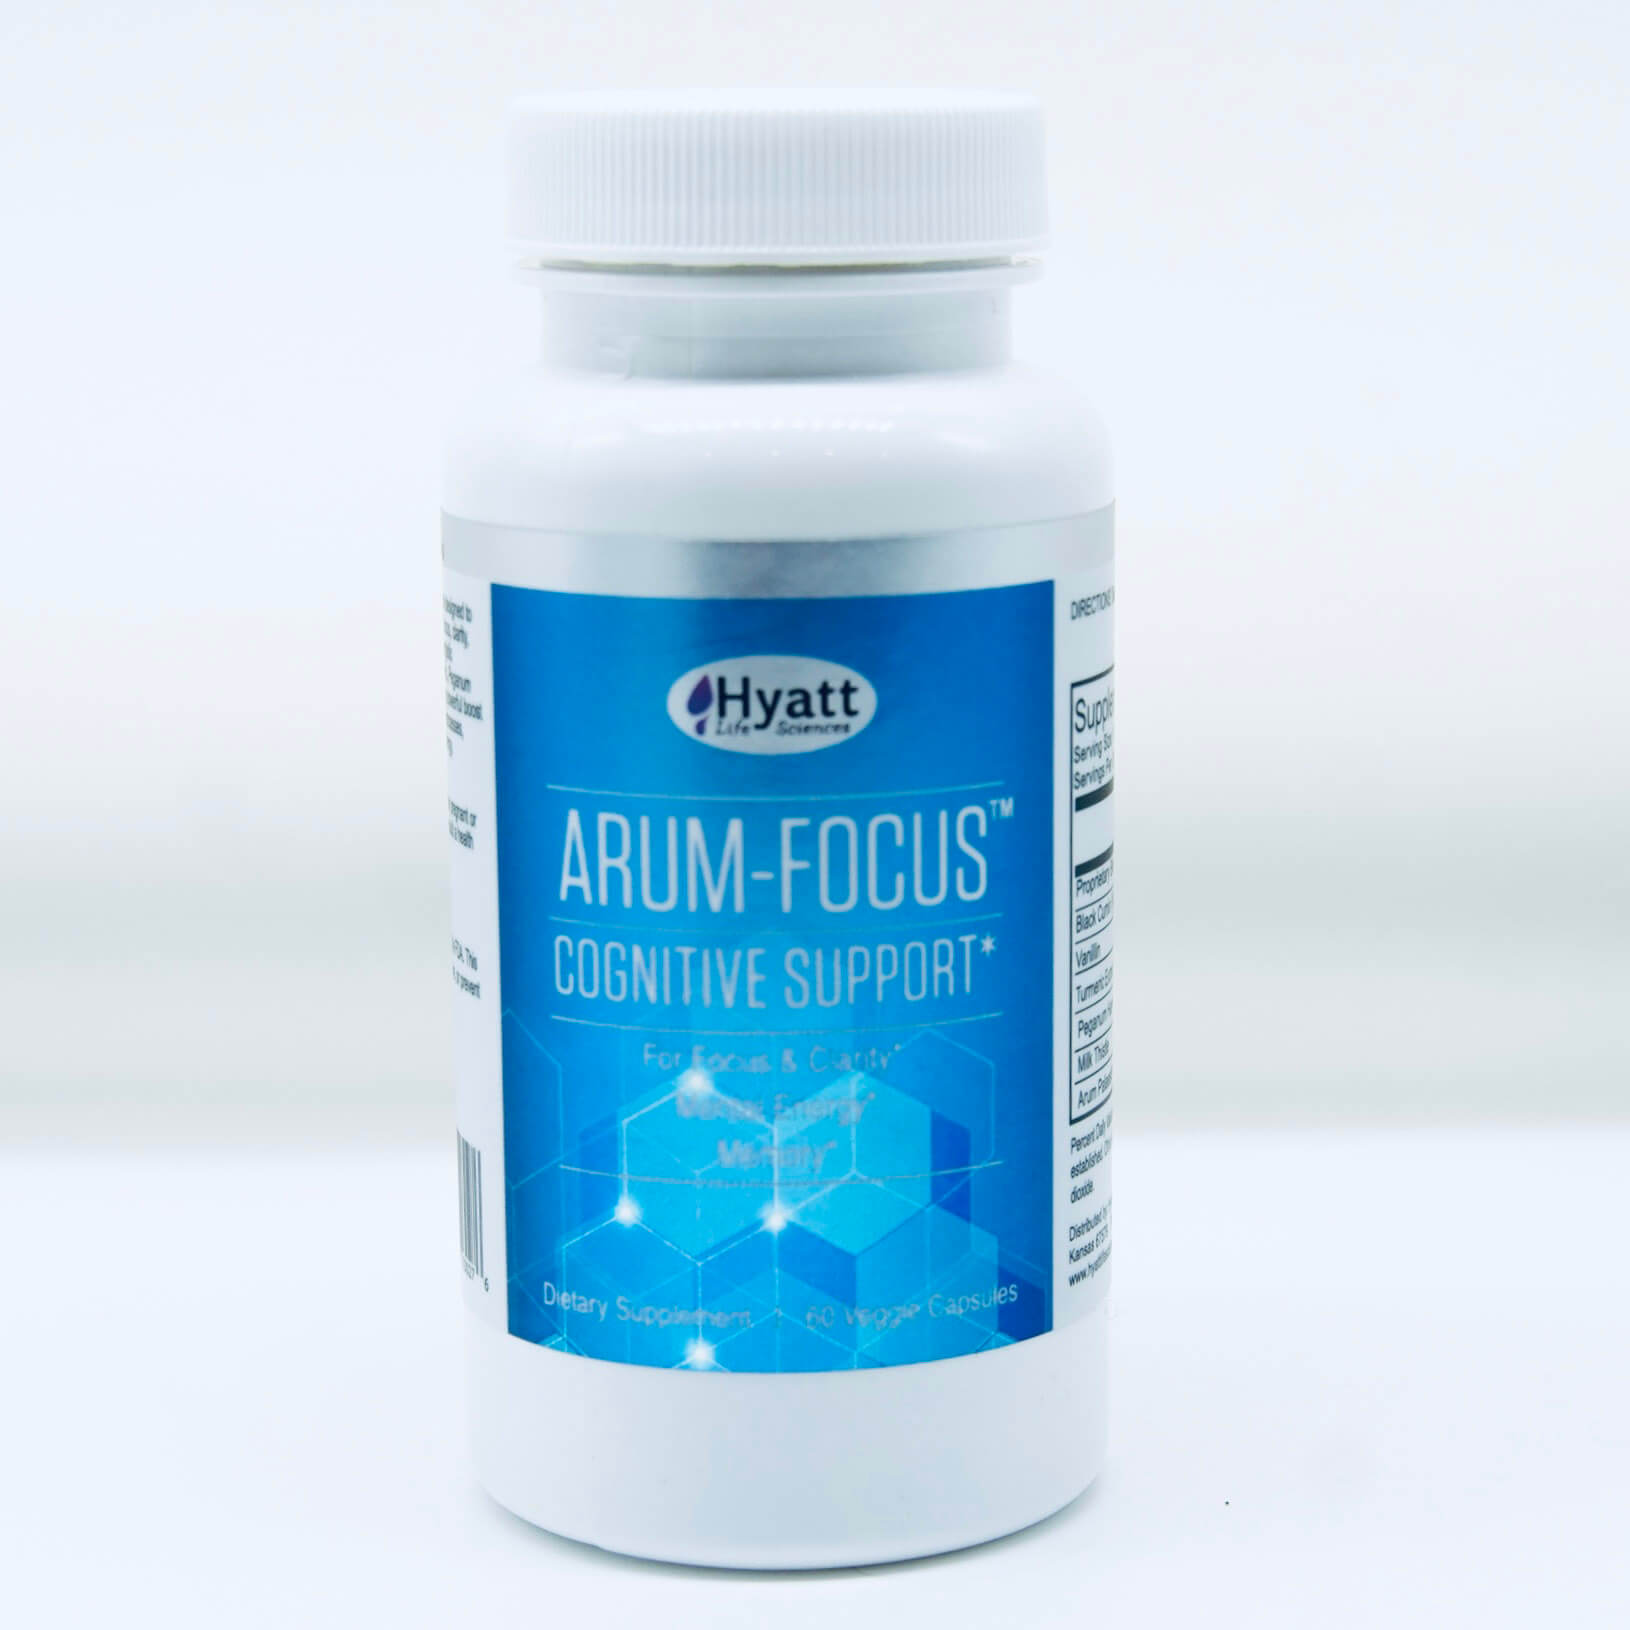 Arum-Focus™